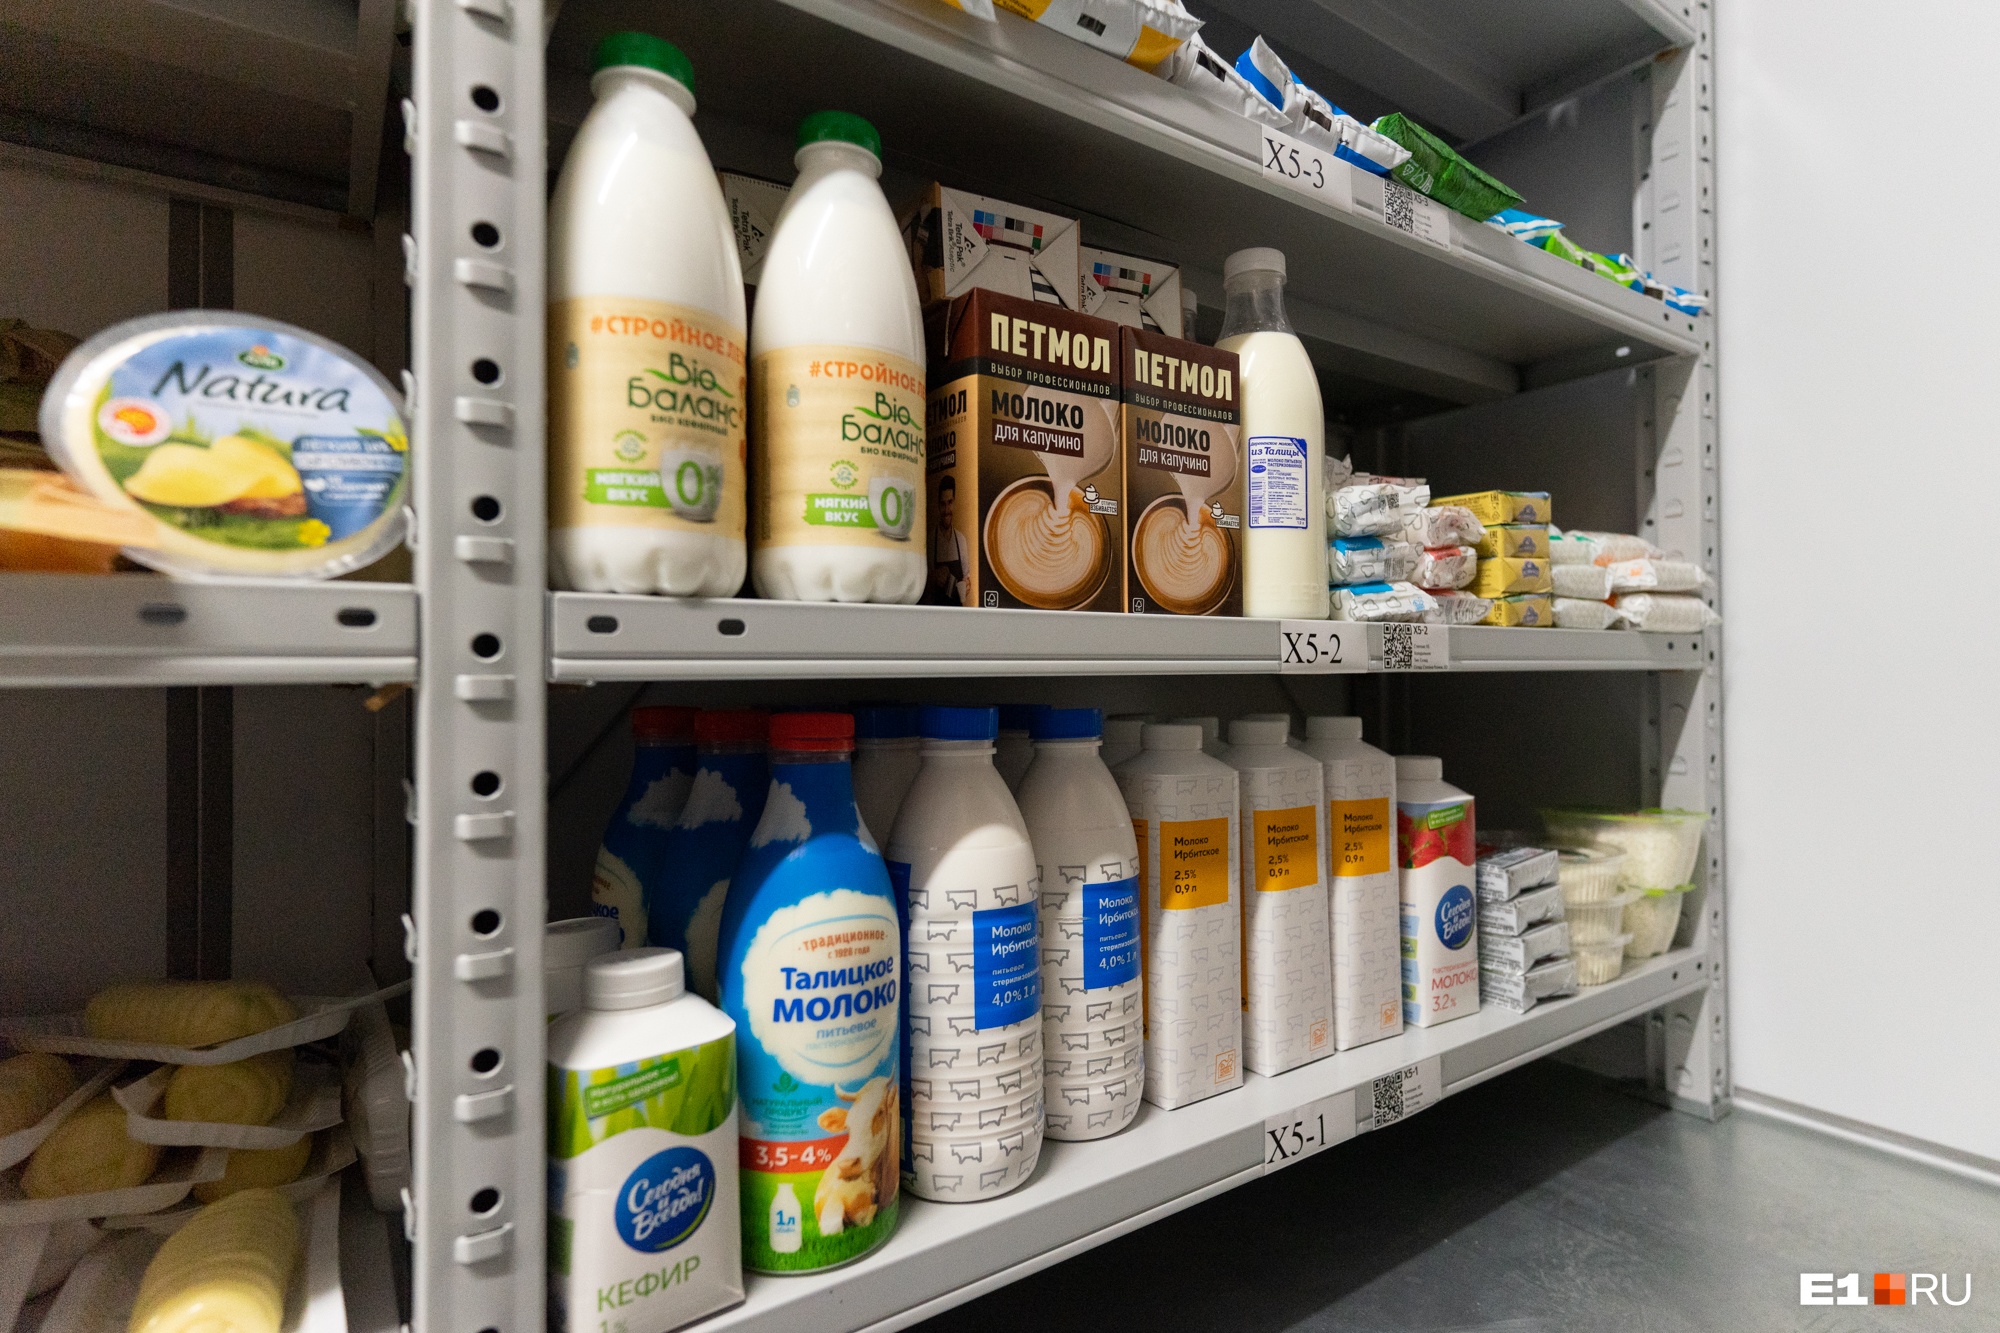 Пробили потолок! Молоко в Свердловской области взлетело в цене